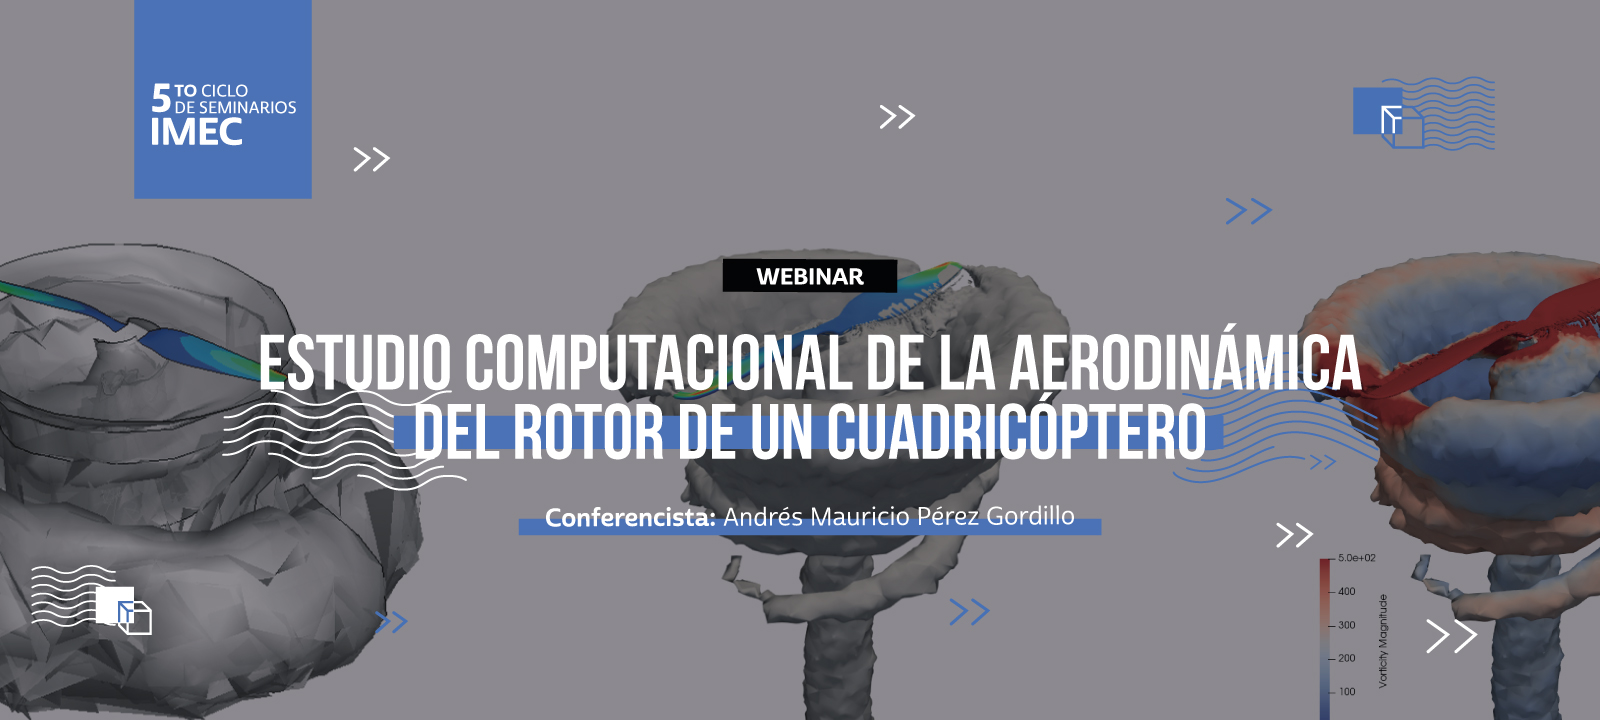 Andrés Mauricio nos contará sobre la aerodinámica del rotor de un cuadricóptero